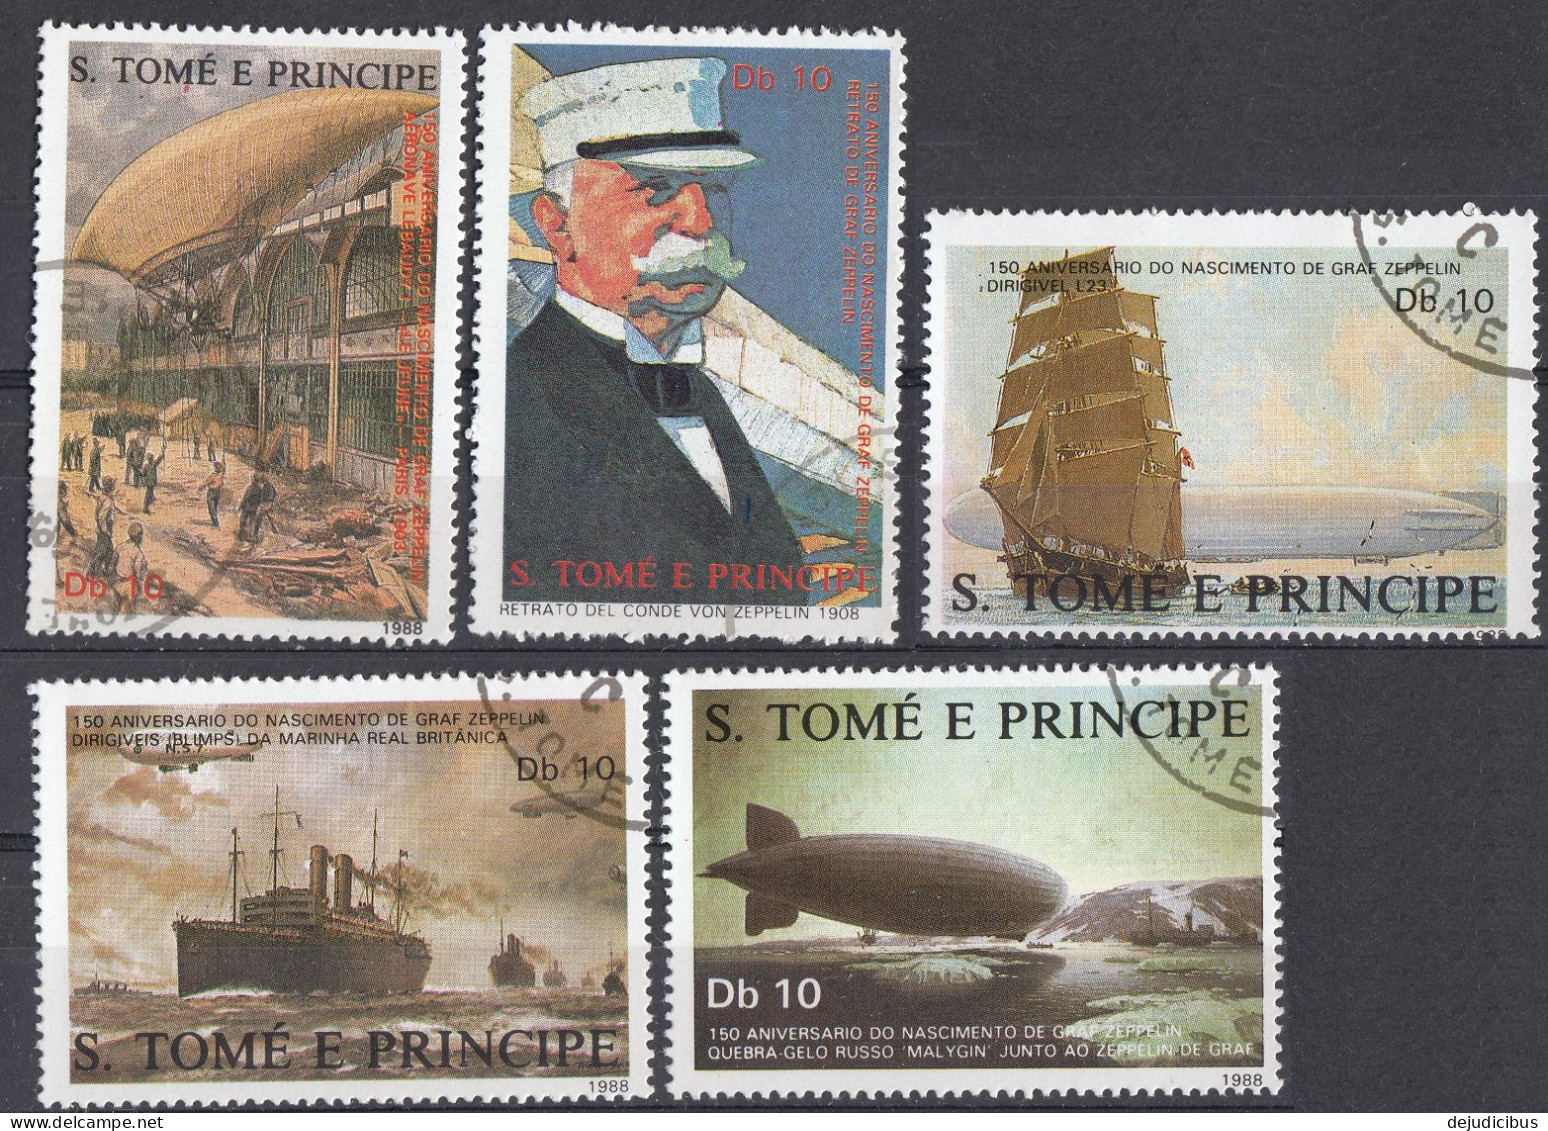 S. TOME' E PRINCIPE - 1988 - Serie Completa Di 5 Valori Usati: Yvert 915/919 - Sao Tome And Principe